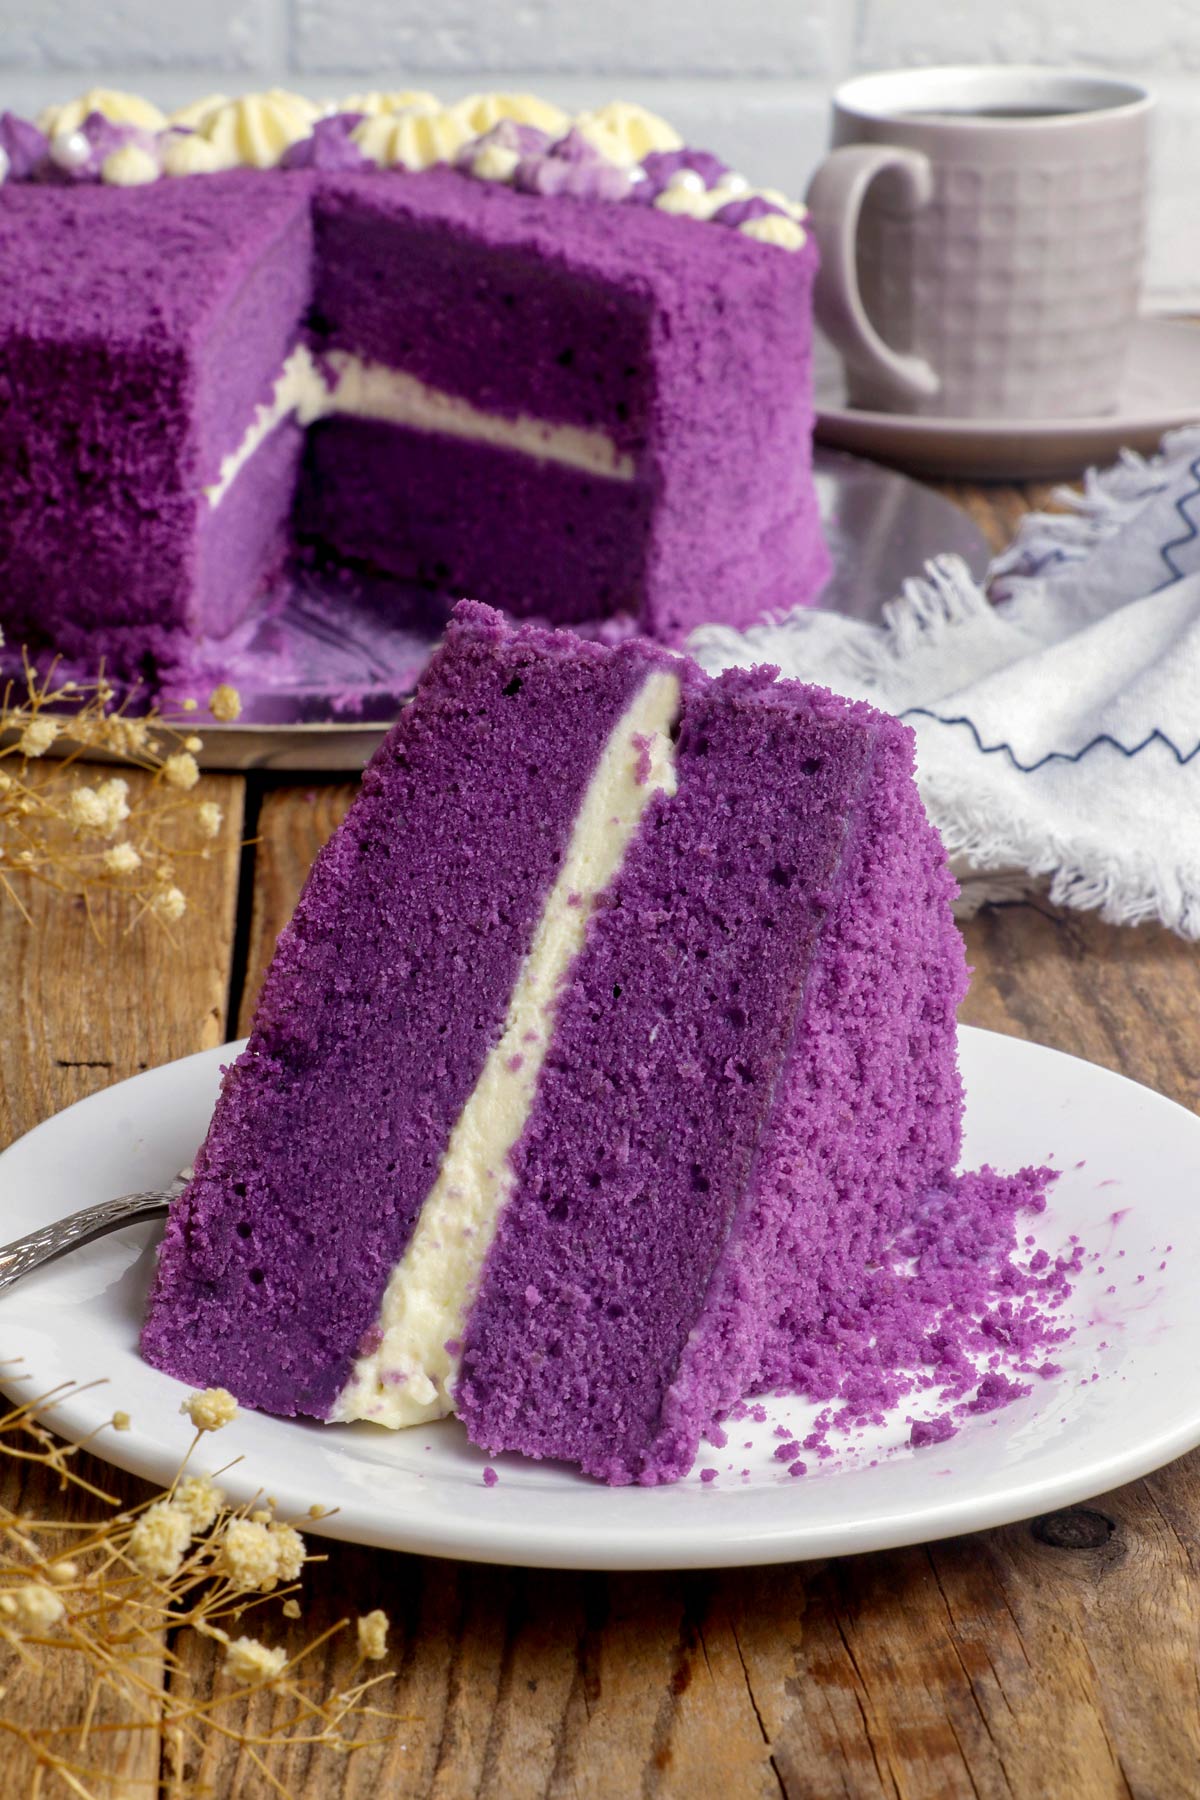 Ube Cake (Filipino Purple Yam Cake W/ Macapuno) Hungry Huy, 58% OFF